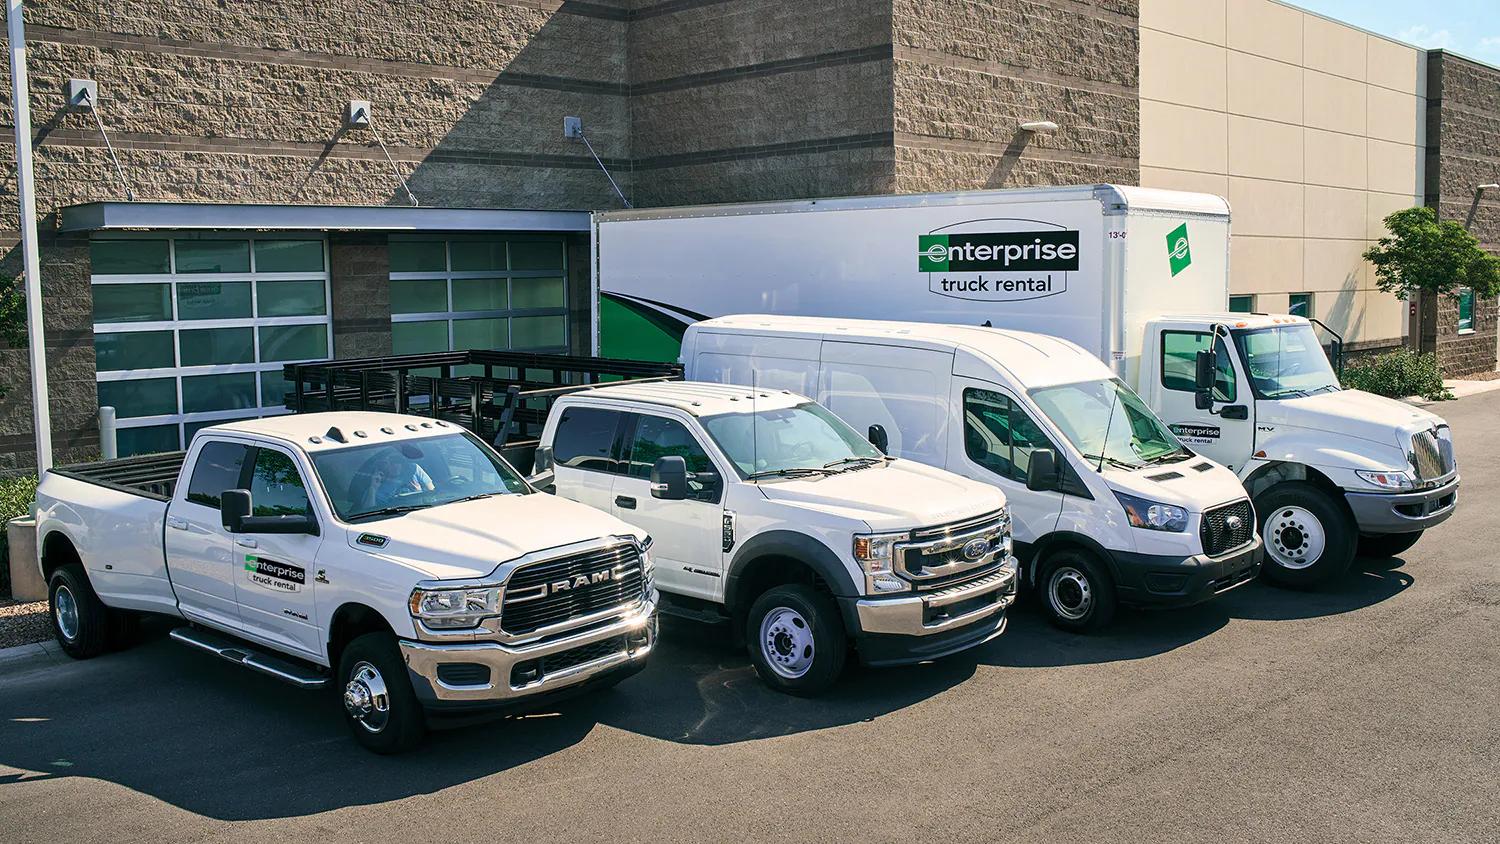 transporte de mudanza ford agencia mexico - Cuáles son los servicios que ofrece Ford